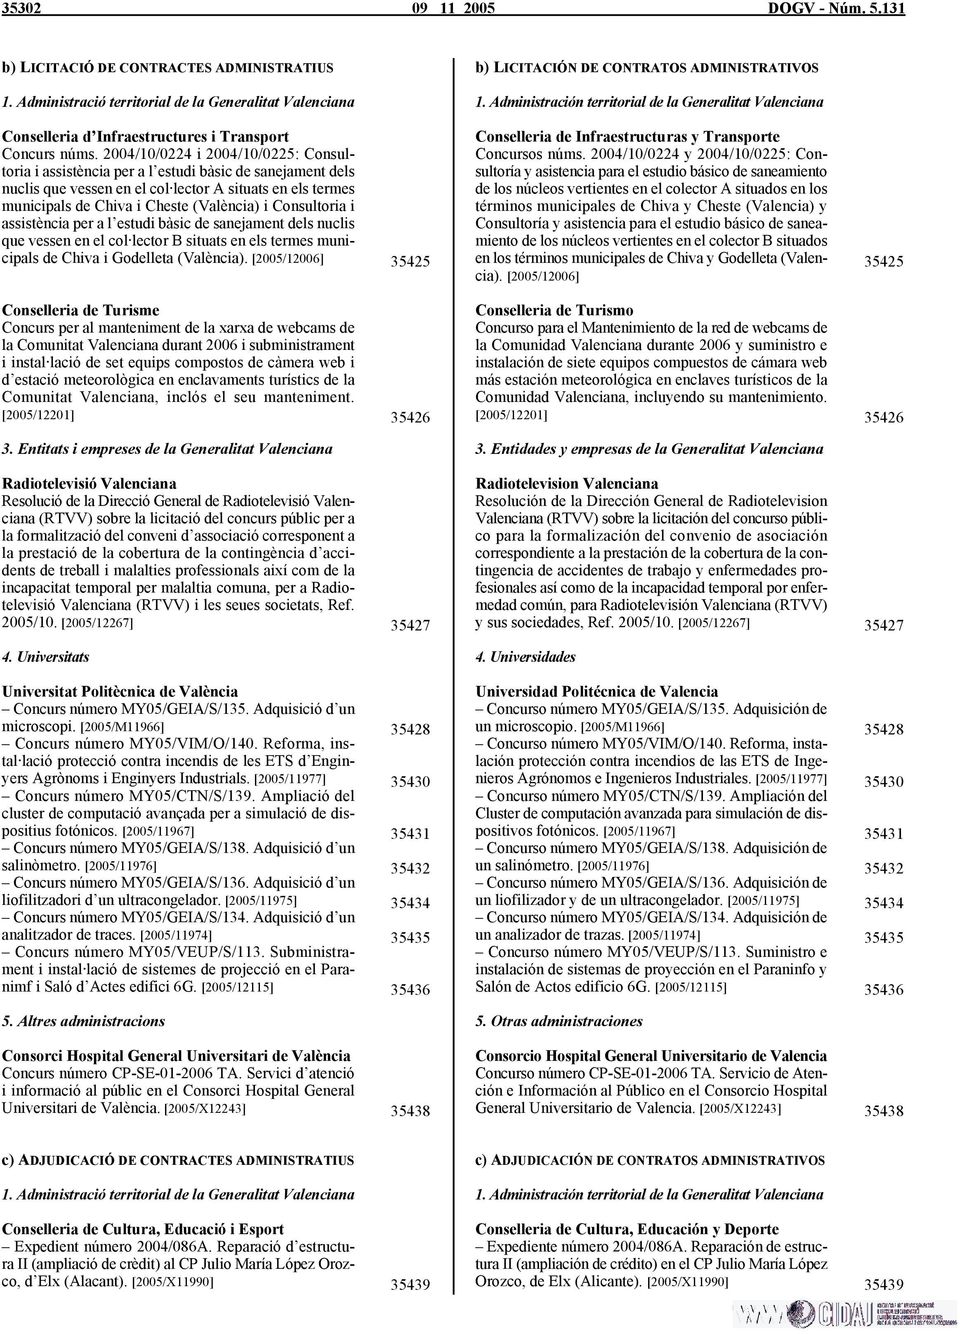 2004/10/0224 i 2004/10/0225: Consultoria i assistència per a l estudi bàsic de sanejament dels nuclis que vessen en el col lector A situats en els termes municipals de Chiva i Cheste (València) i